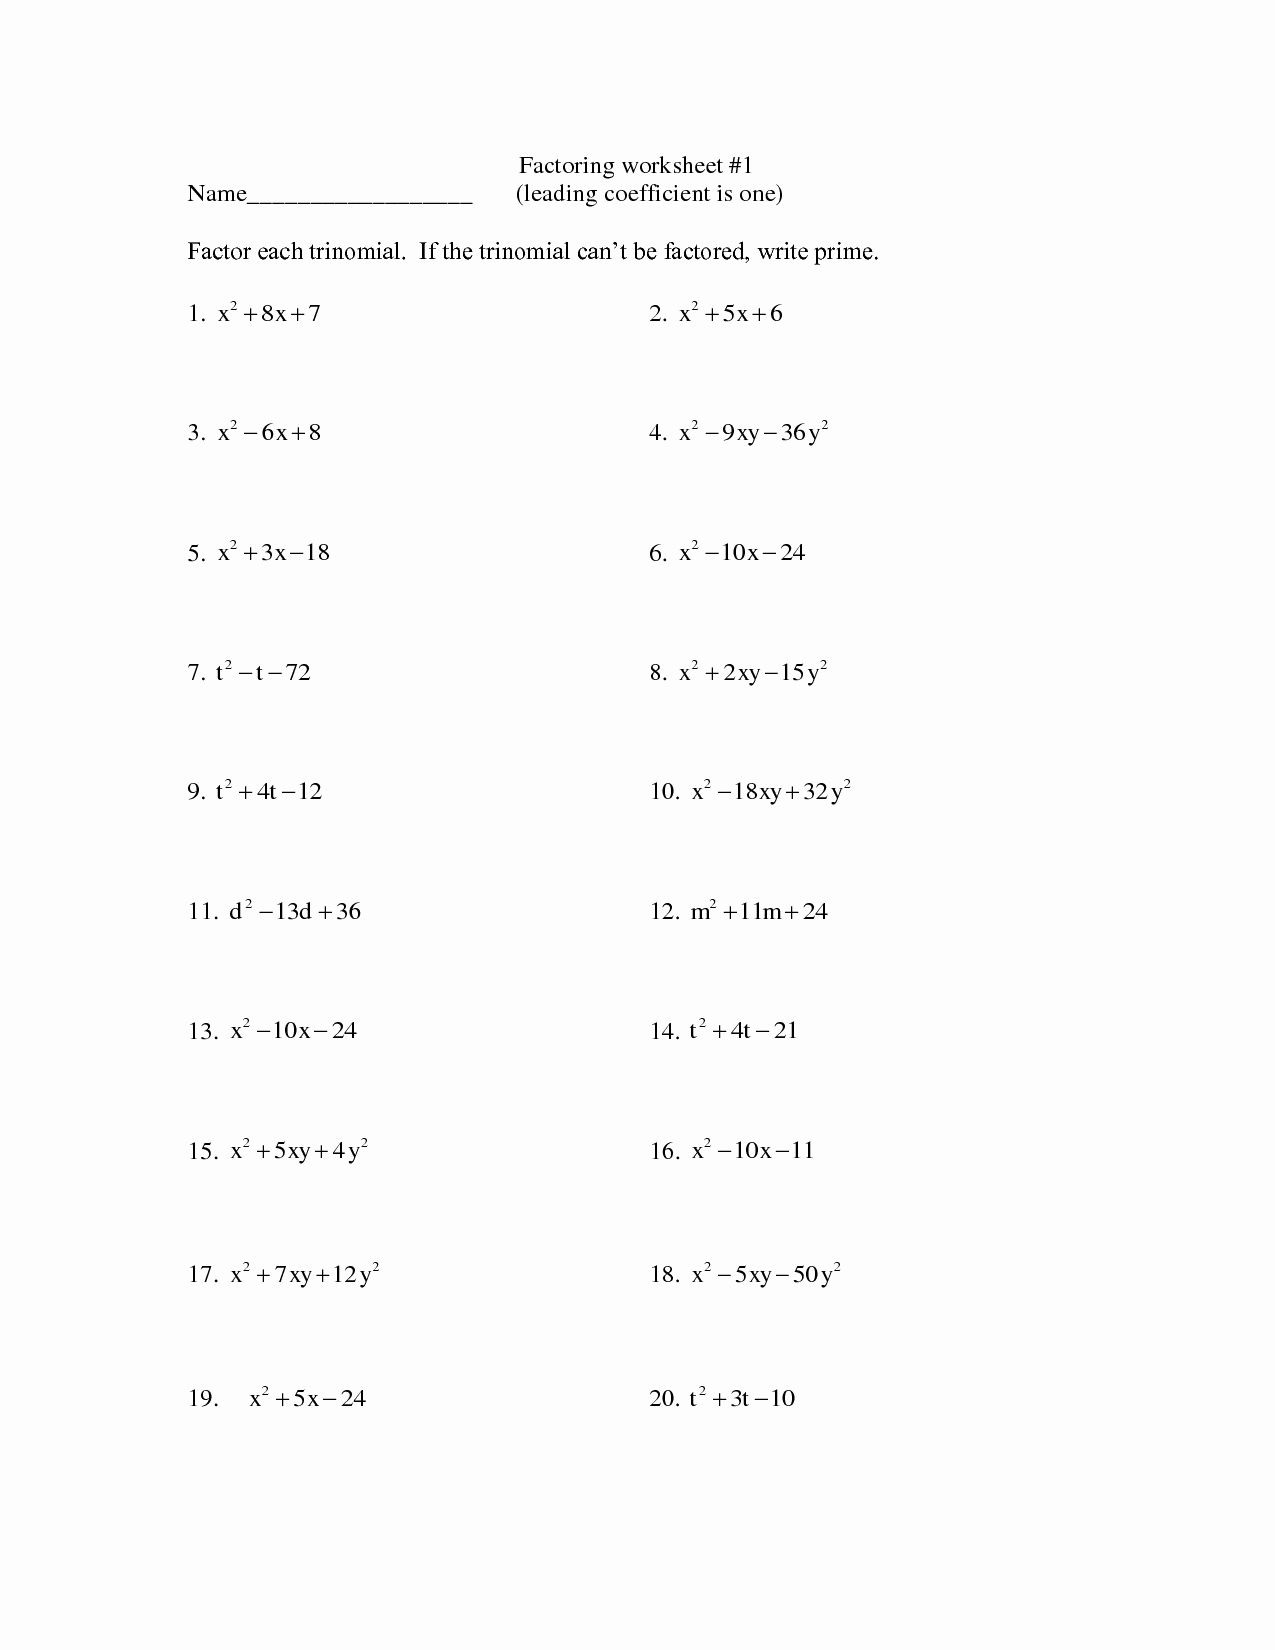 Factoring Quadratics Worksheet